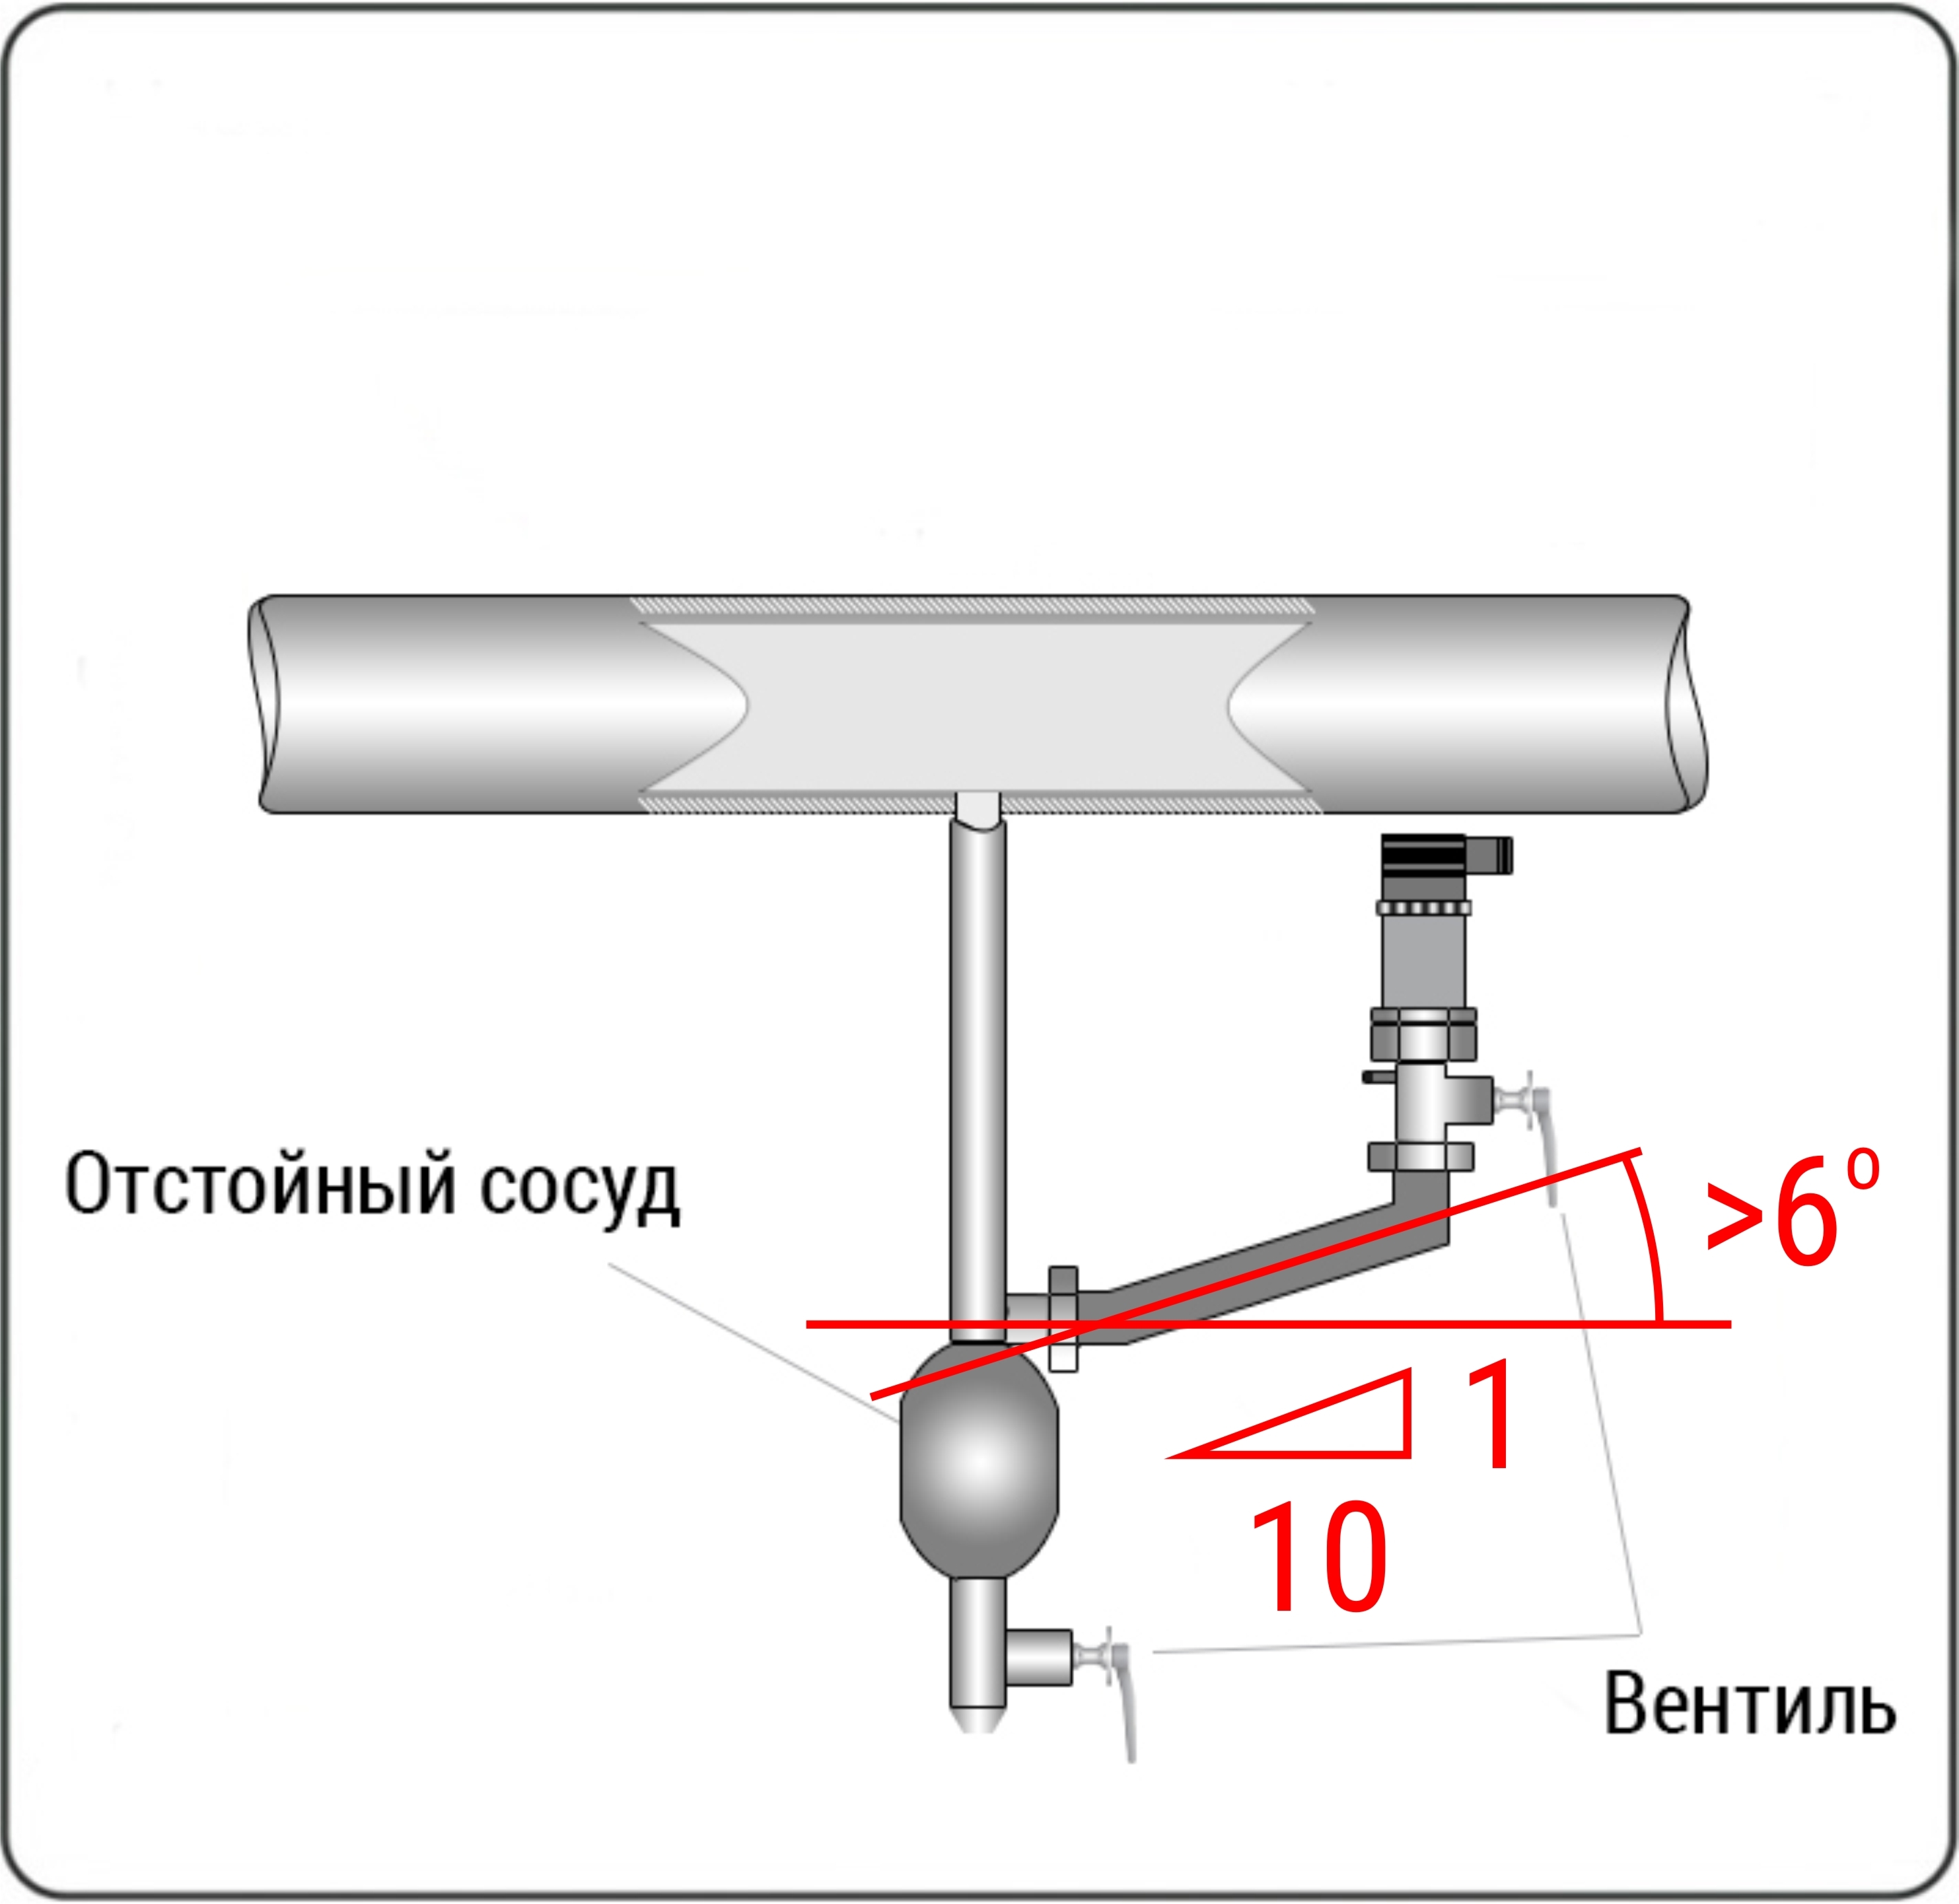 Если установить датчик в верхней части магистрали не представляется возможным, то при установке снизу в нижних точках соединительных трубопроводов следует устанавливать отстойные сосуды для сбора конденсата.